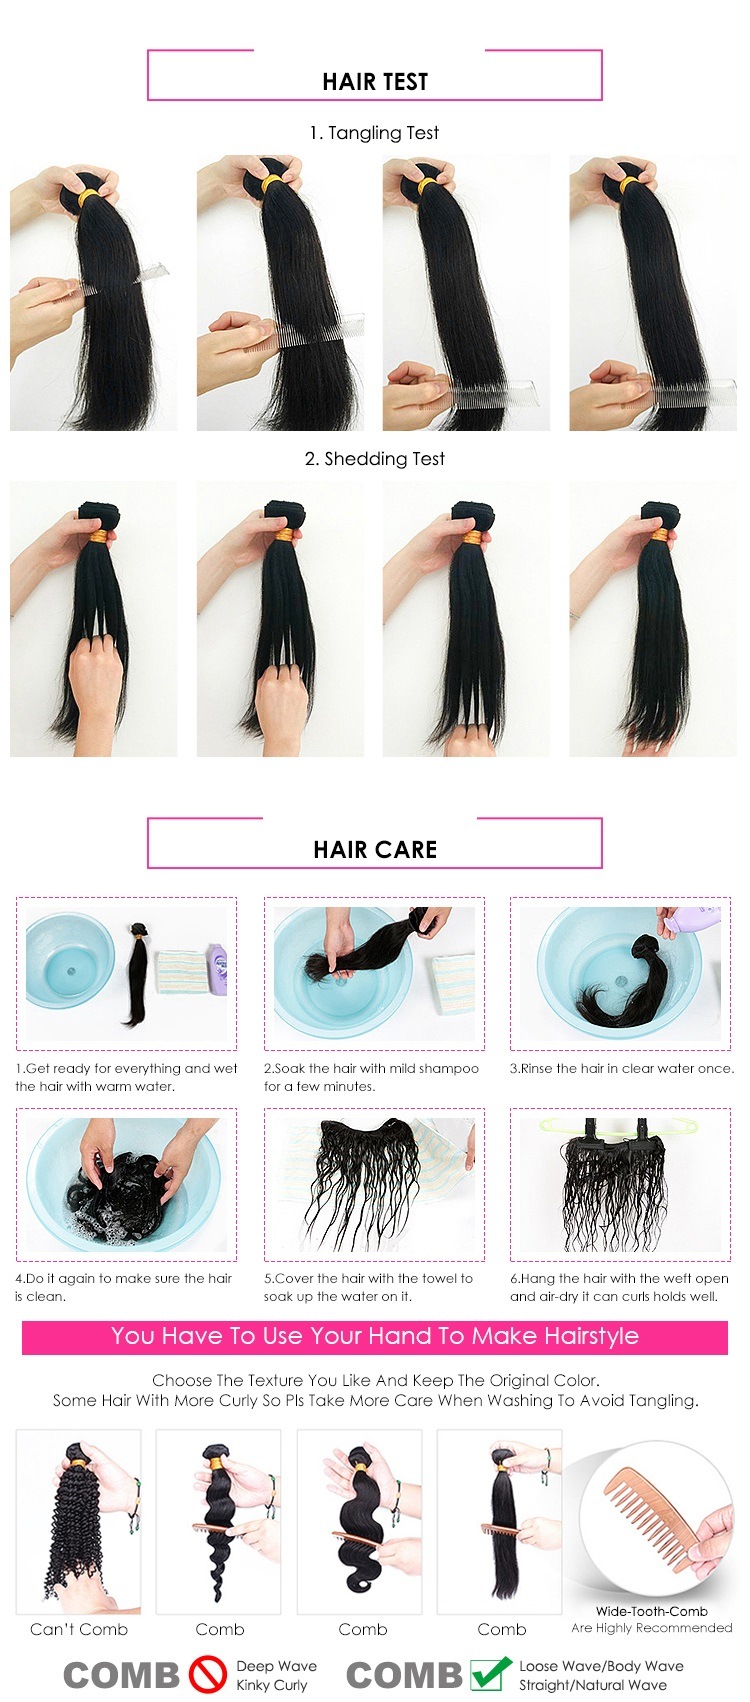 Cheap 100% Human Hair Lace Closure Frontal Transparent Swiss Super Thin, Lace Frontal Closures Human Hair Vietnamese Hair Vendor